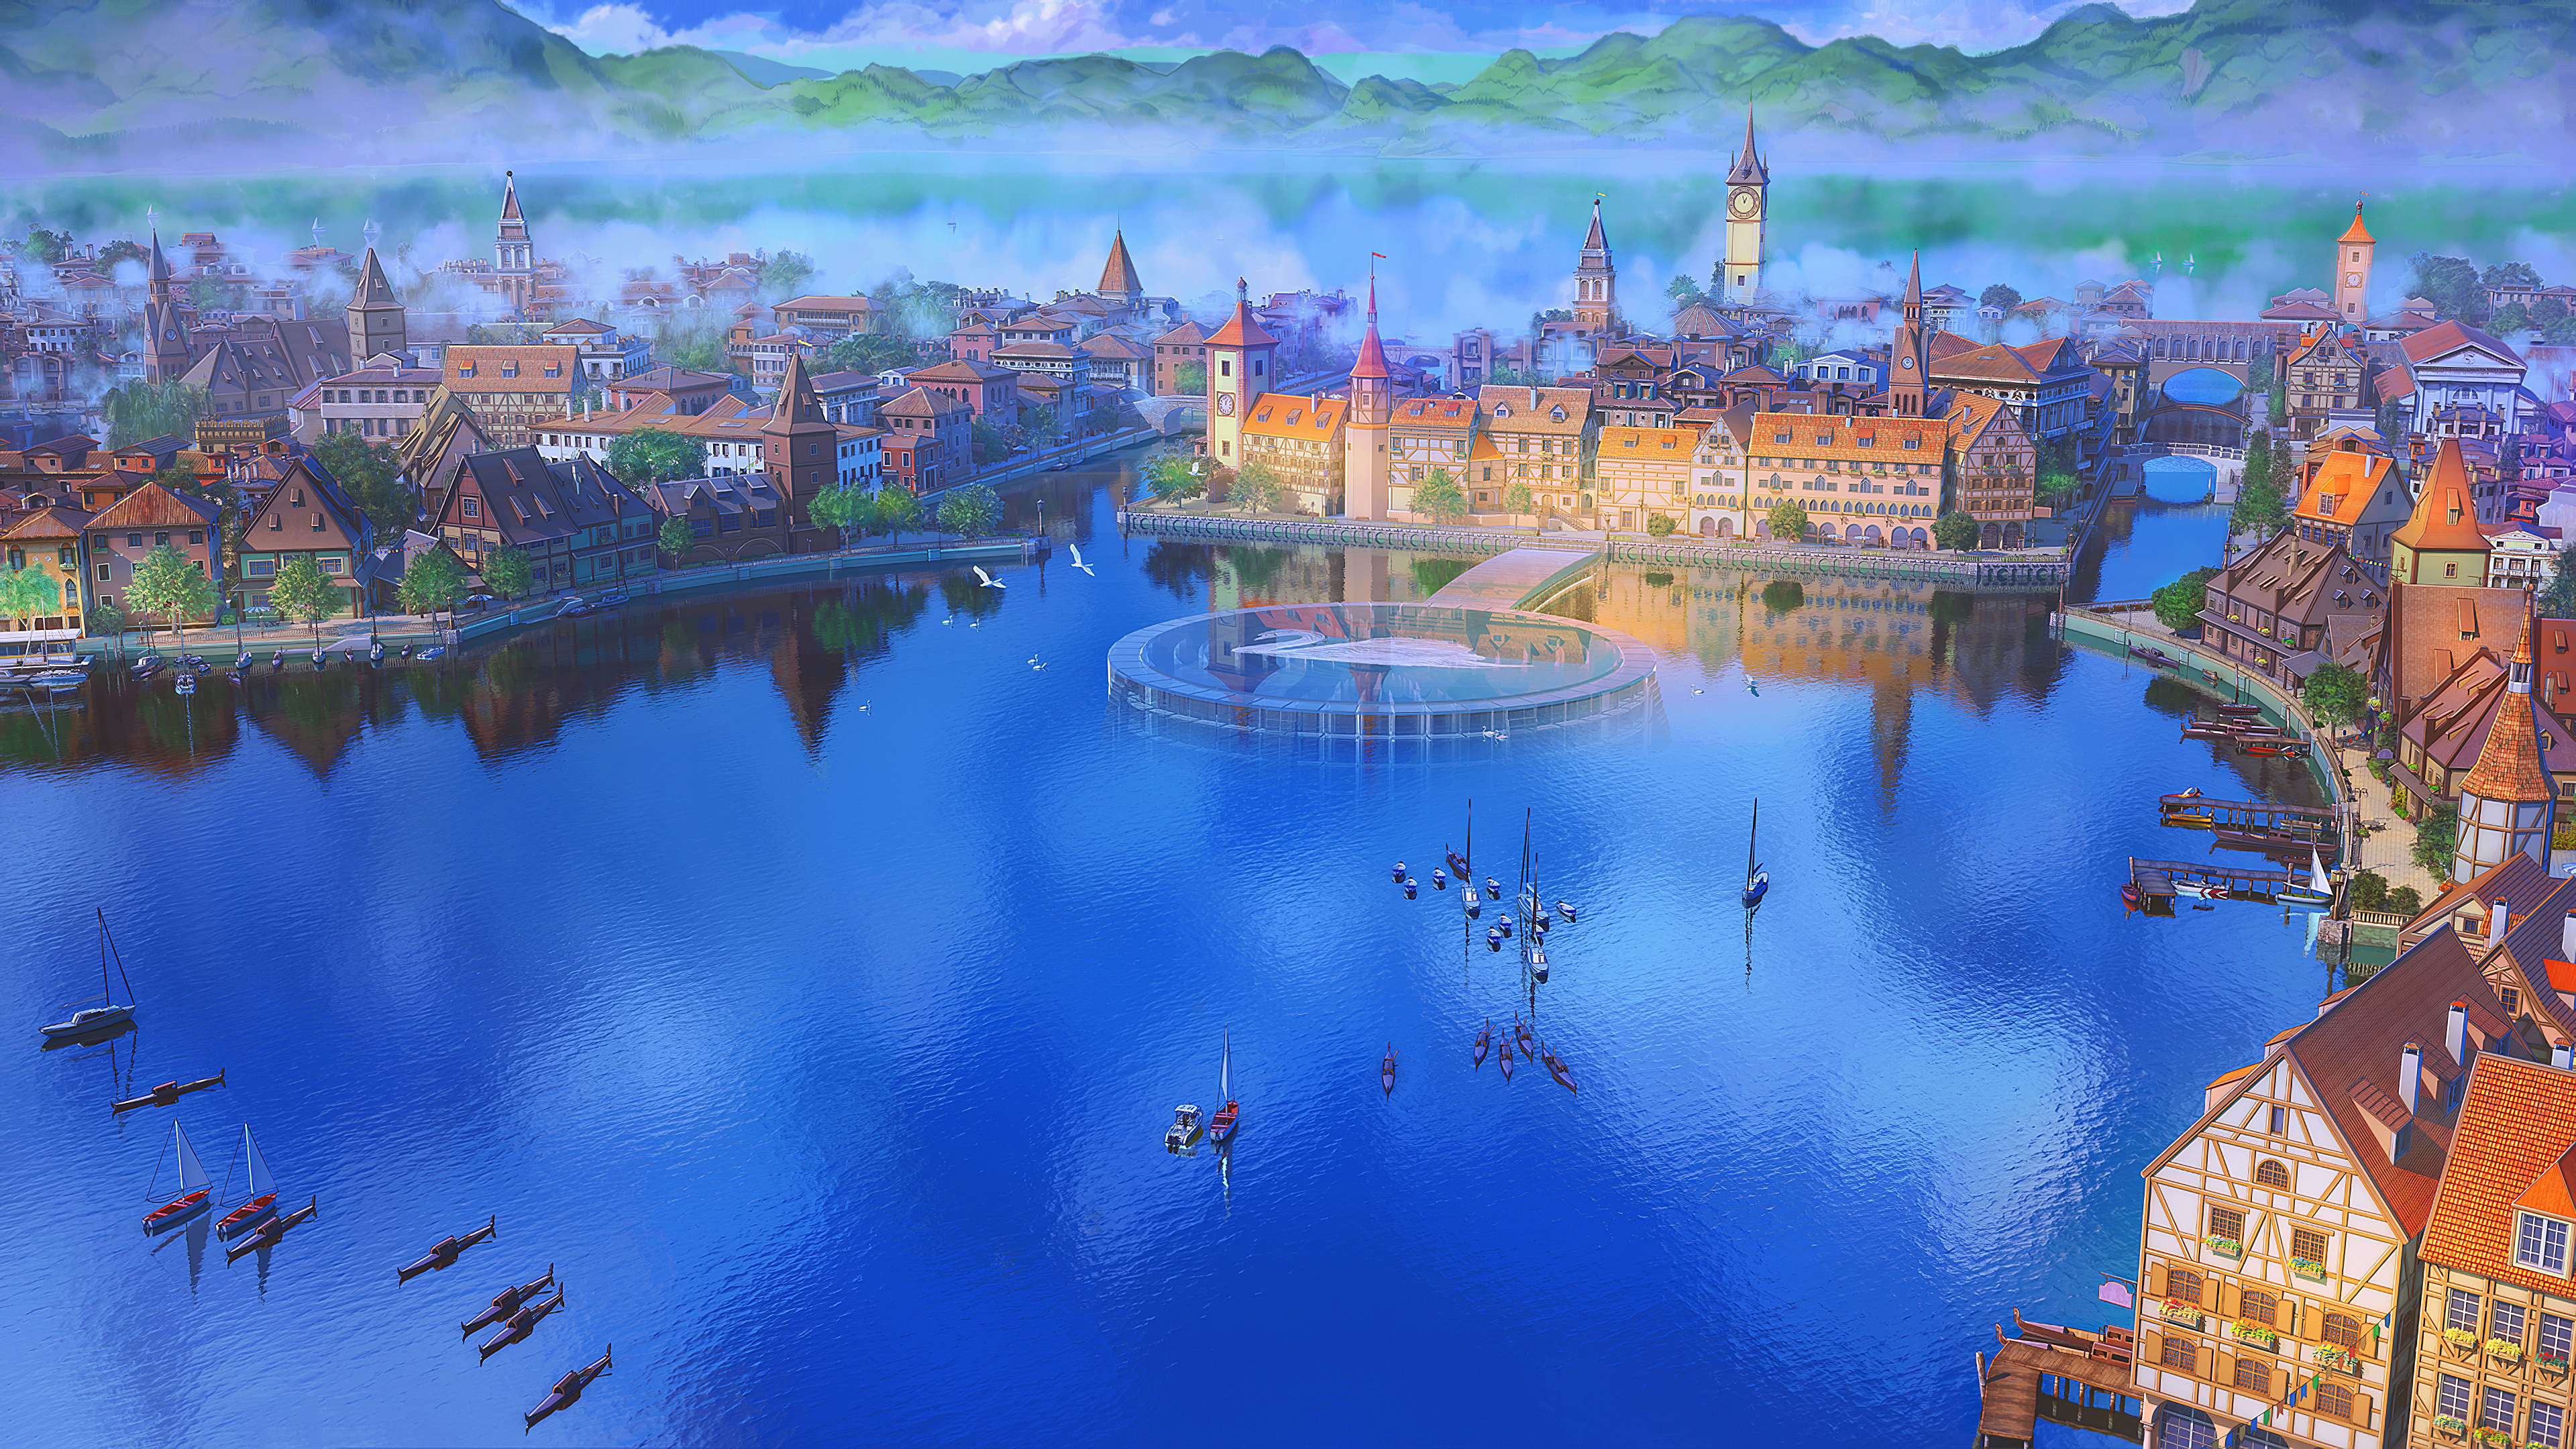 General 3840x2160 fantasy art digital art lake city town daylight water harbor boat artwork